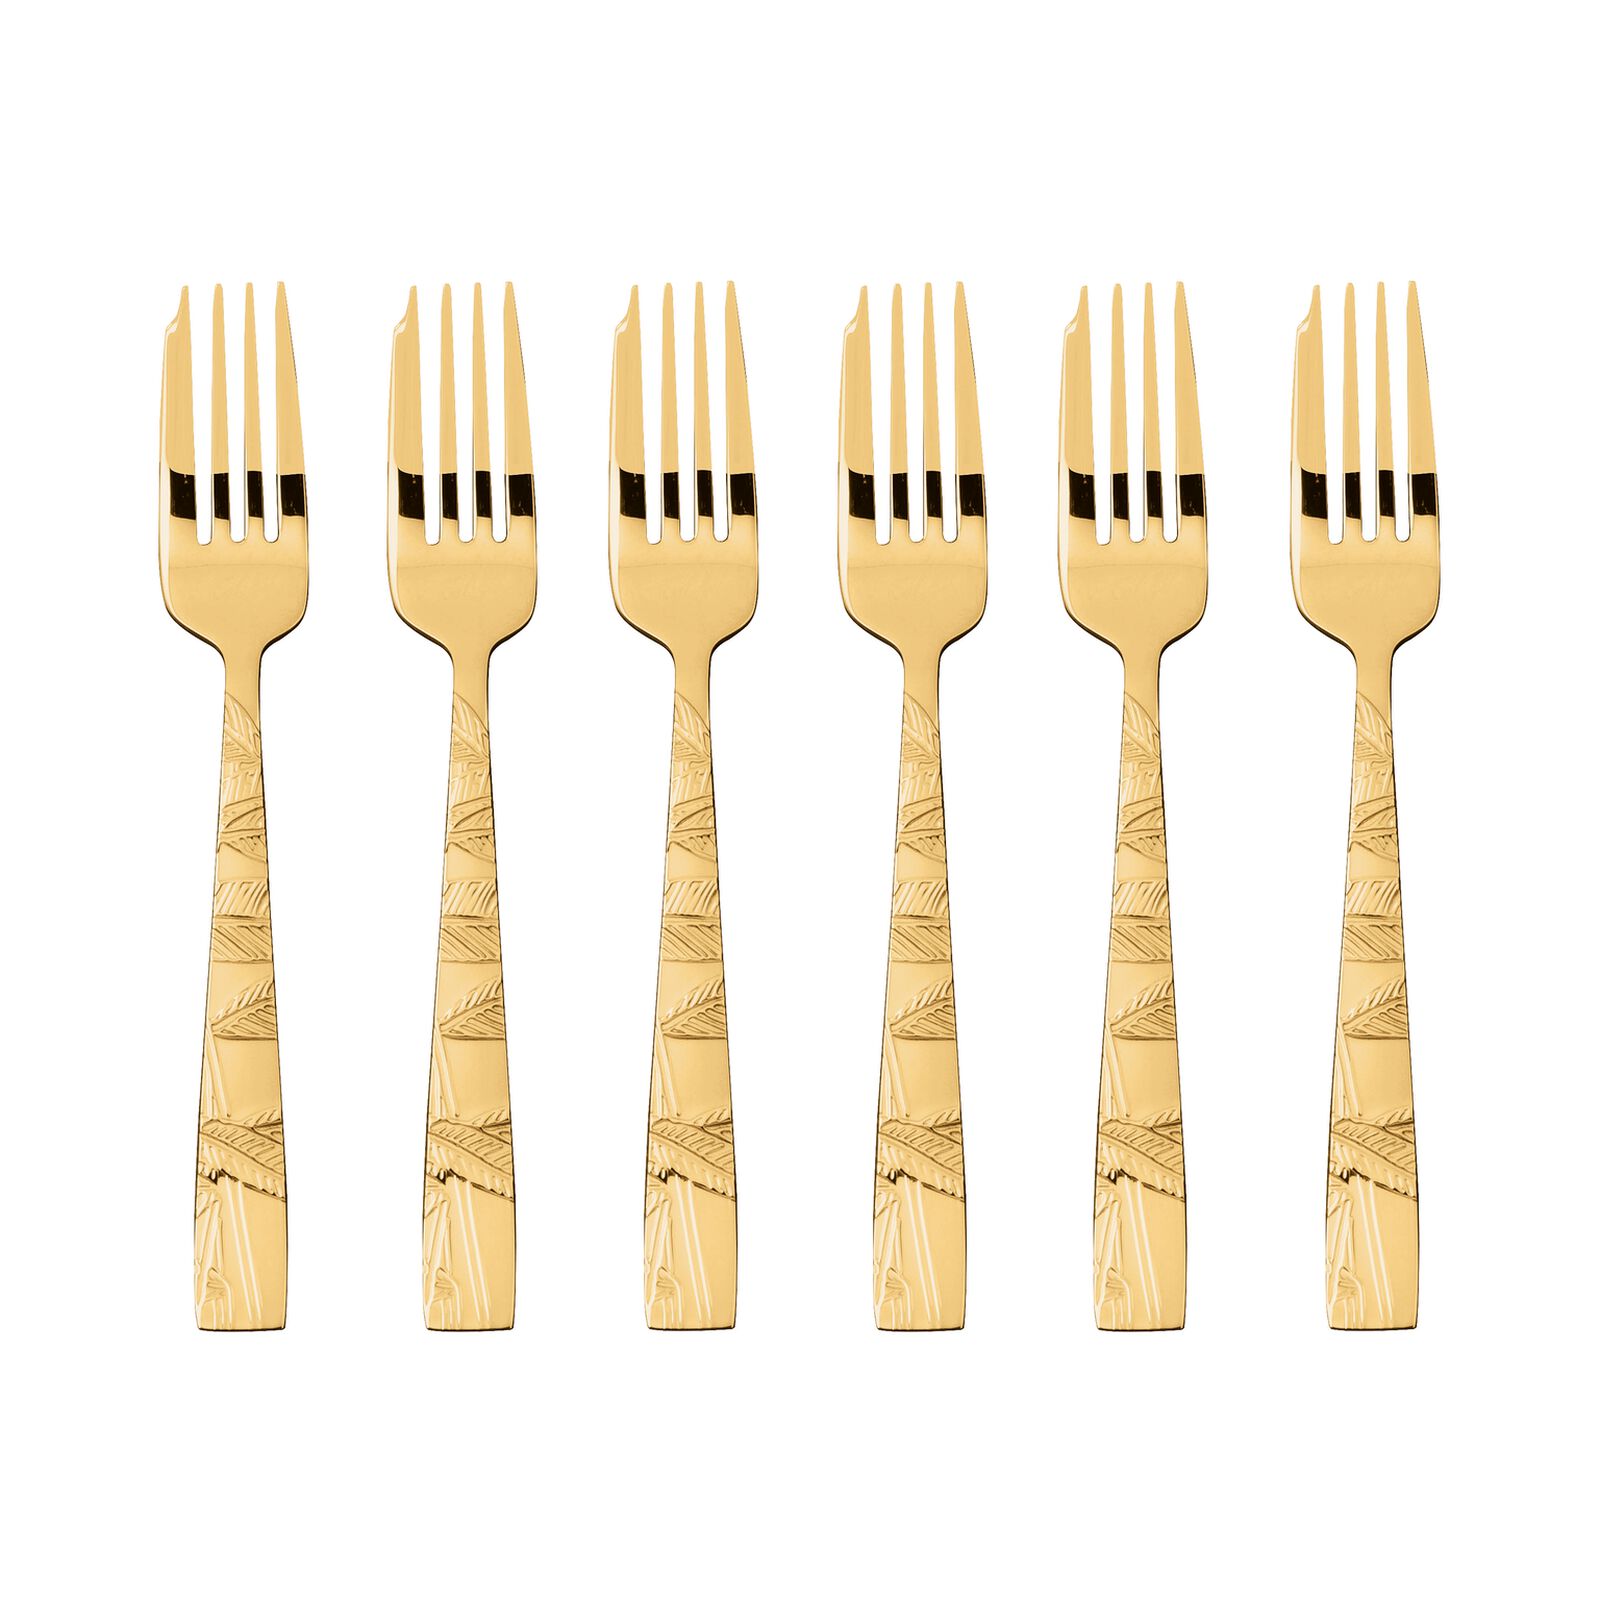 Rock pvd gold cutlery service 36 pieces gold Sambonet 52762g-83